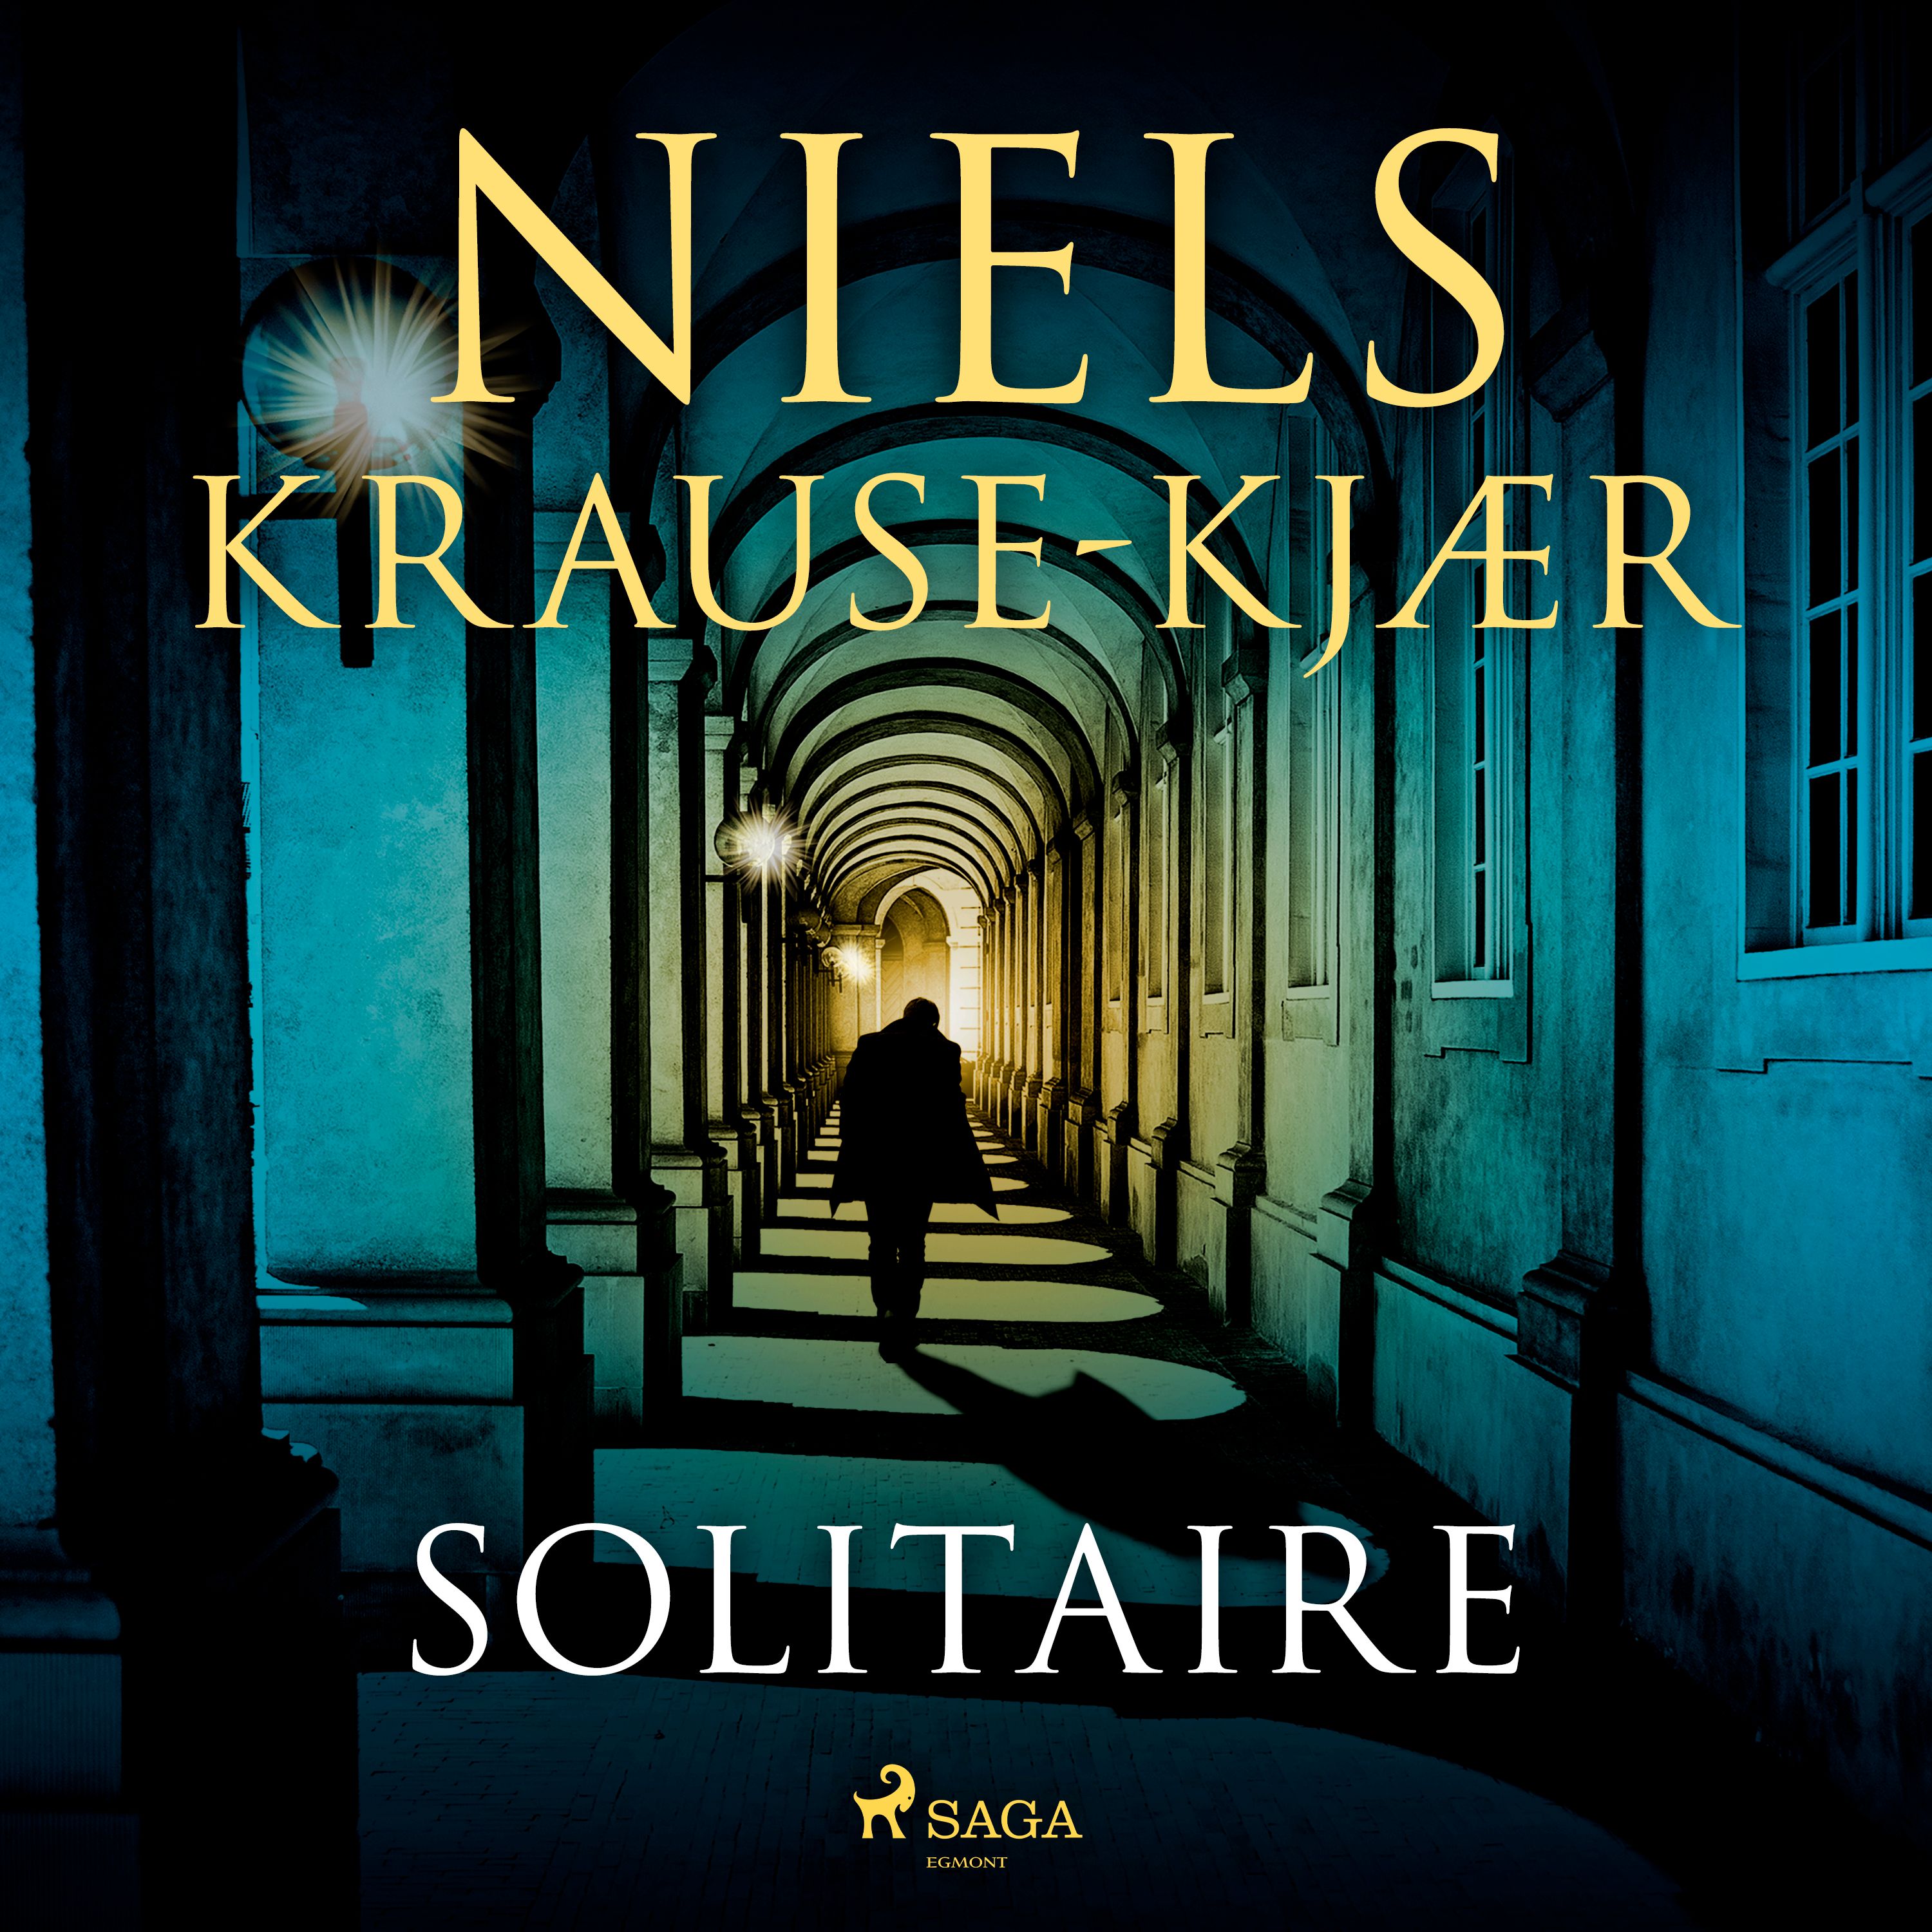 Solitaire, ljudbok av Niels Krause-Kjær